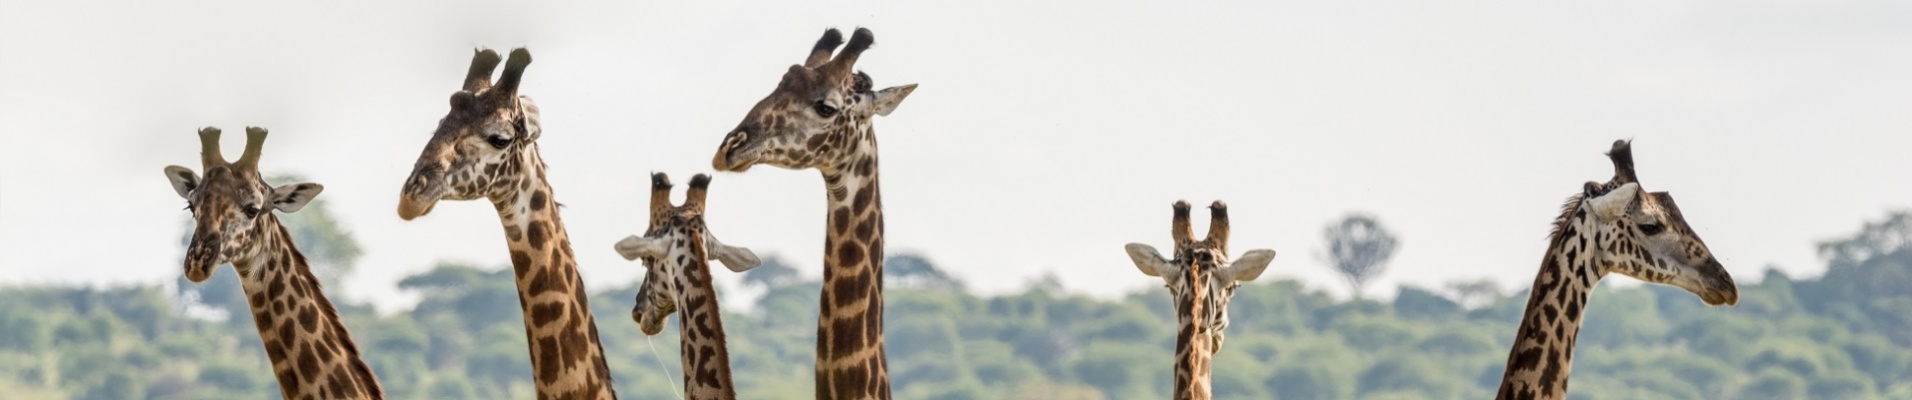 giraffes tanzanie